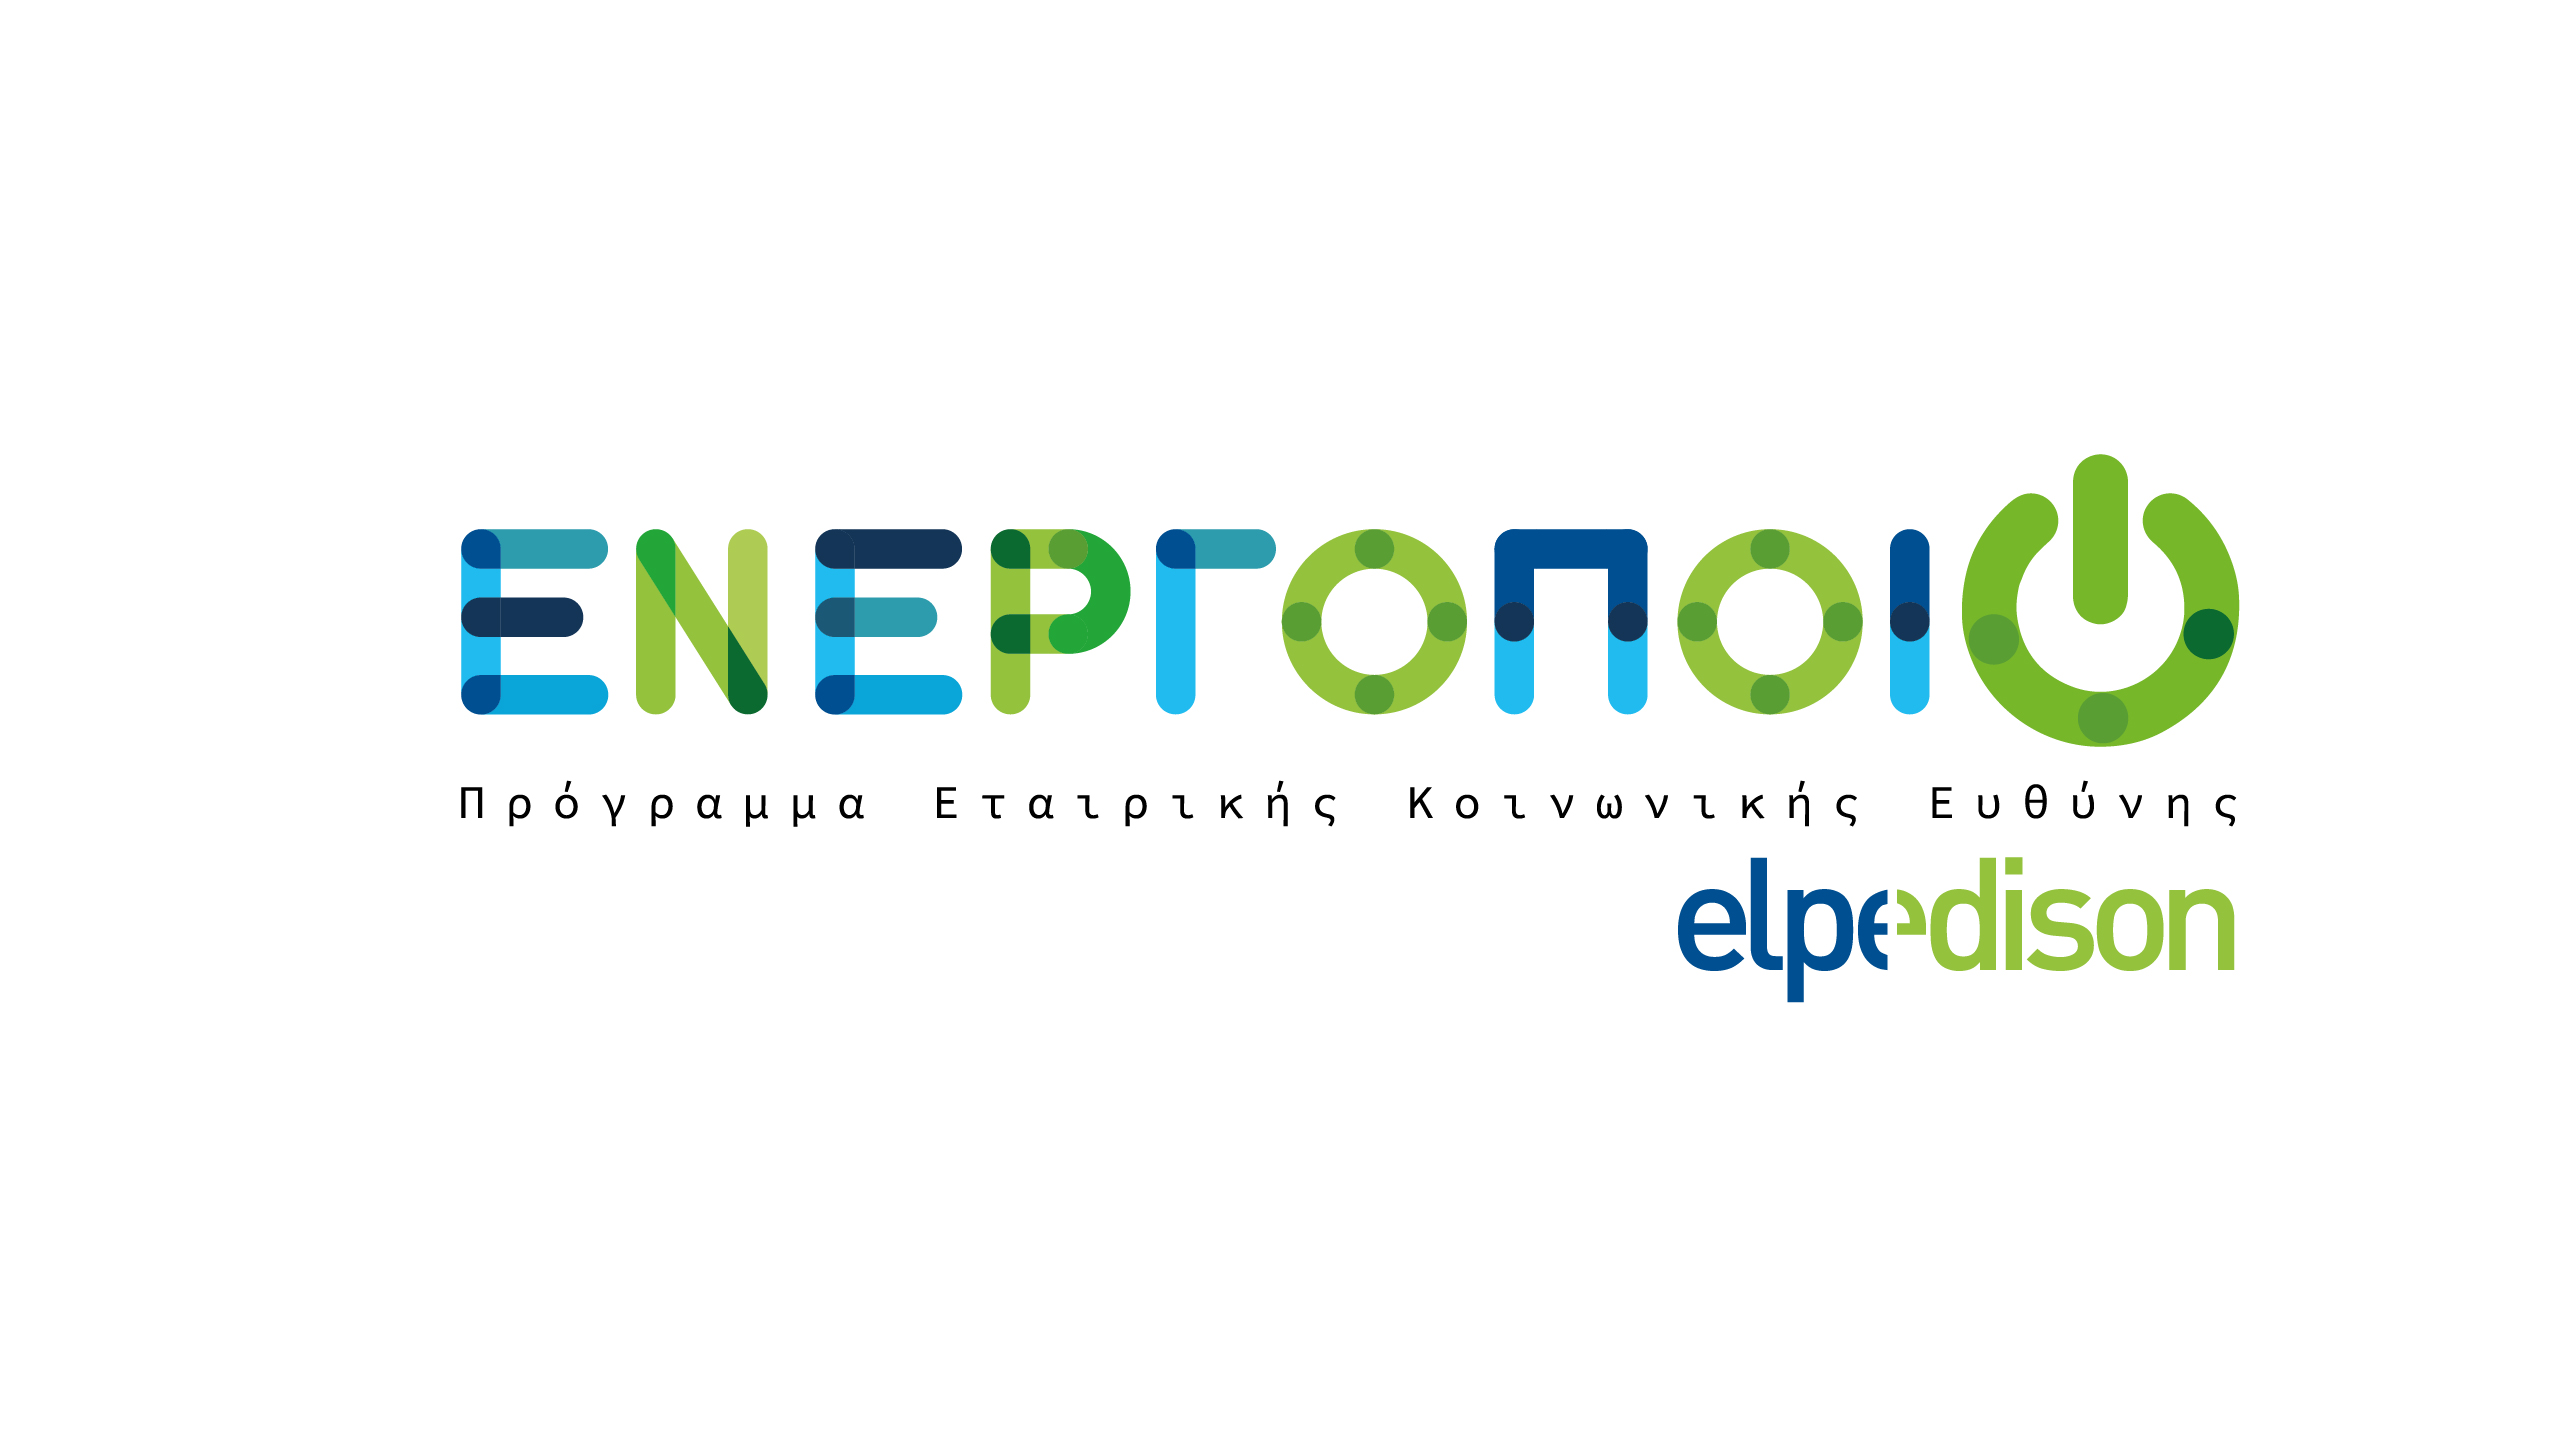 «Ενεργοποιώ»: Νέο Πρόγραμμα Εταιρικής Κοινωνικής Ευθύνης από την ELPEDISON, που στηρίζει έμπρακτα την ελληνική Κοινωνία και το Περιβάλλον